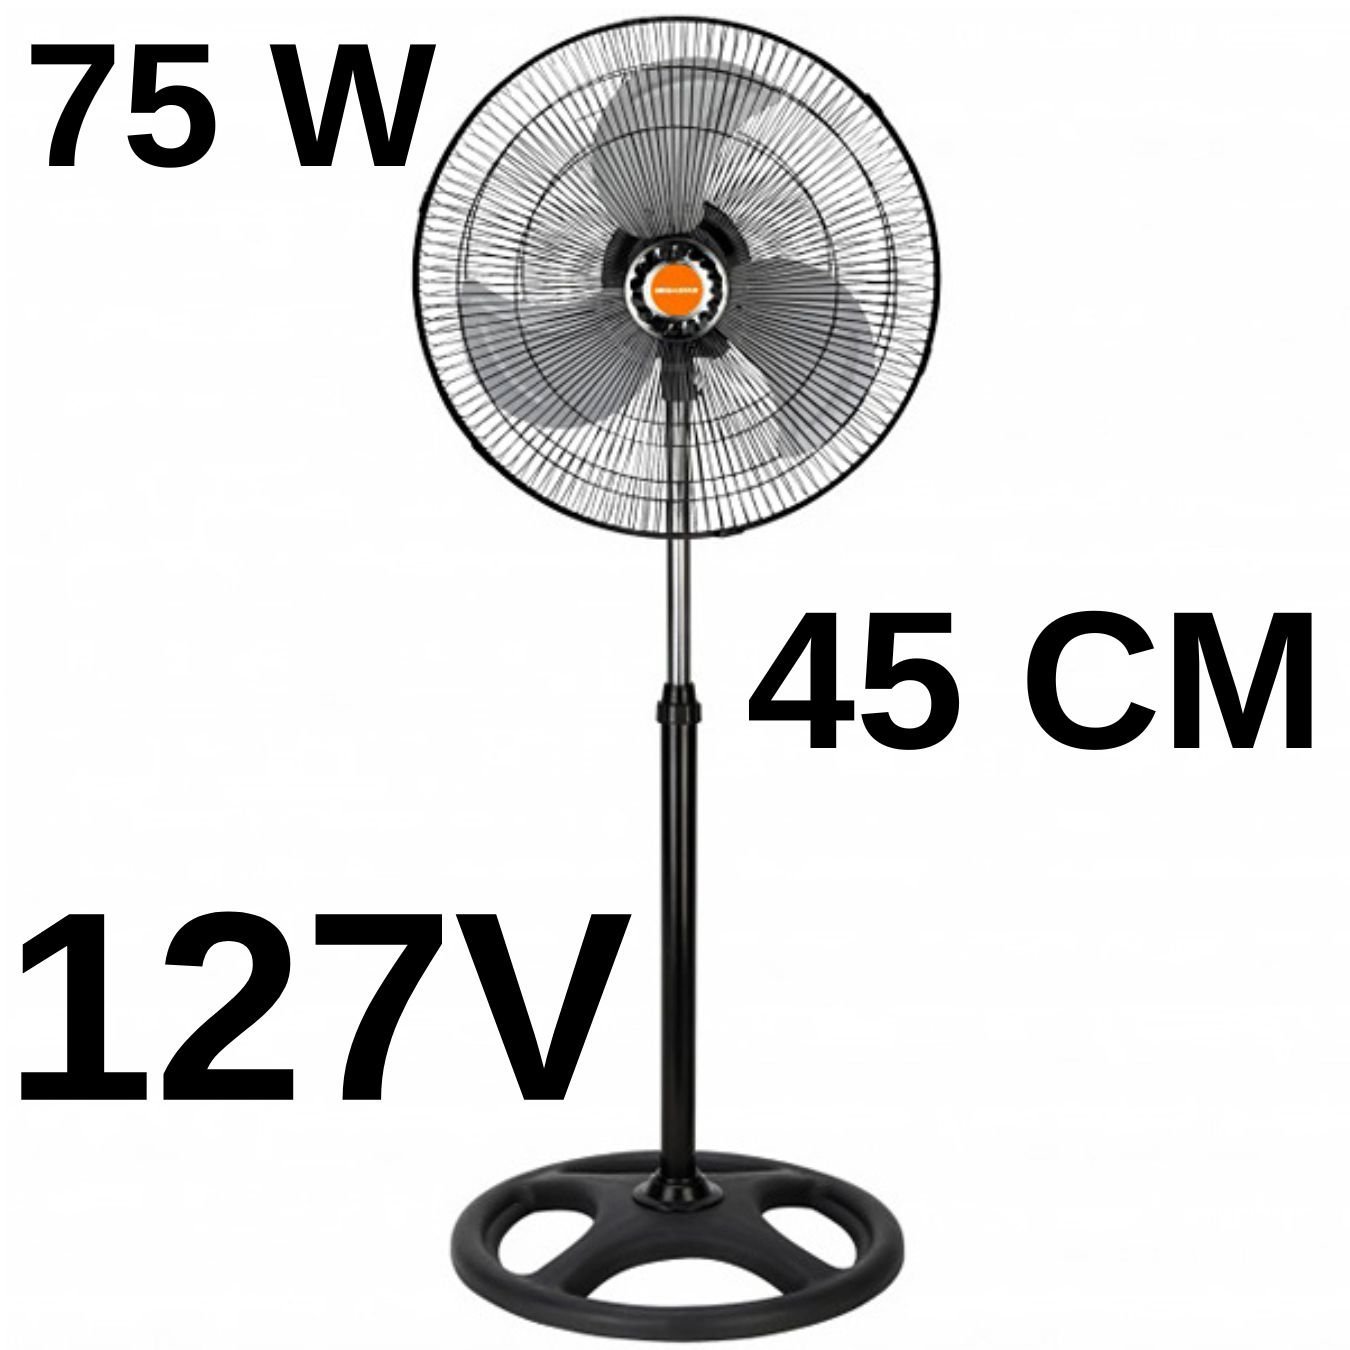 Ventilador 45 Cm Coluna Preto 75w Voltagem:127v - 3